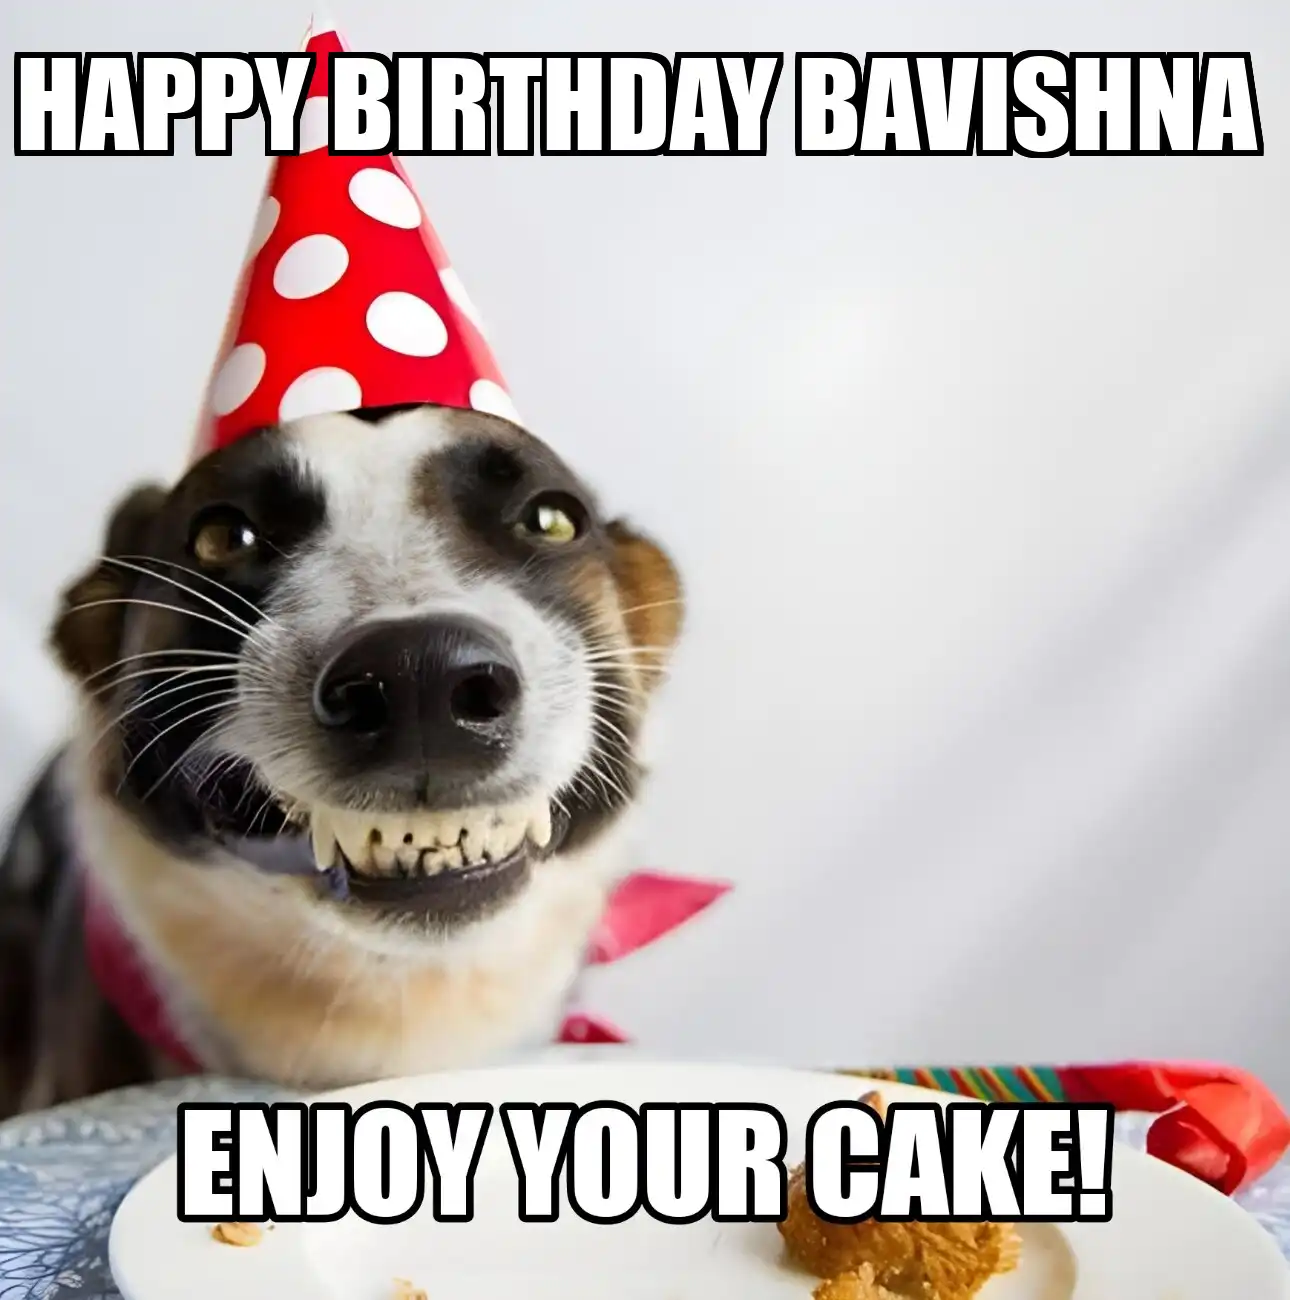 Happy Birthday Bavishna Enjoy Your Cake Dog Meme